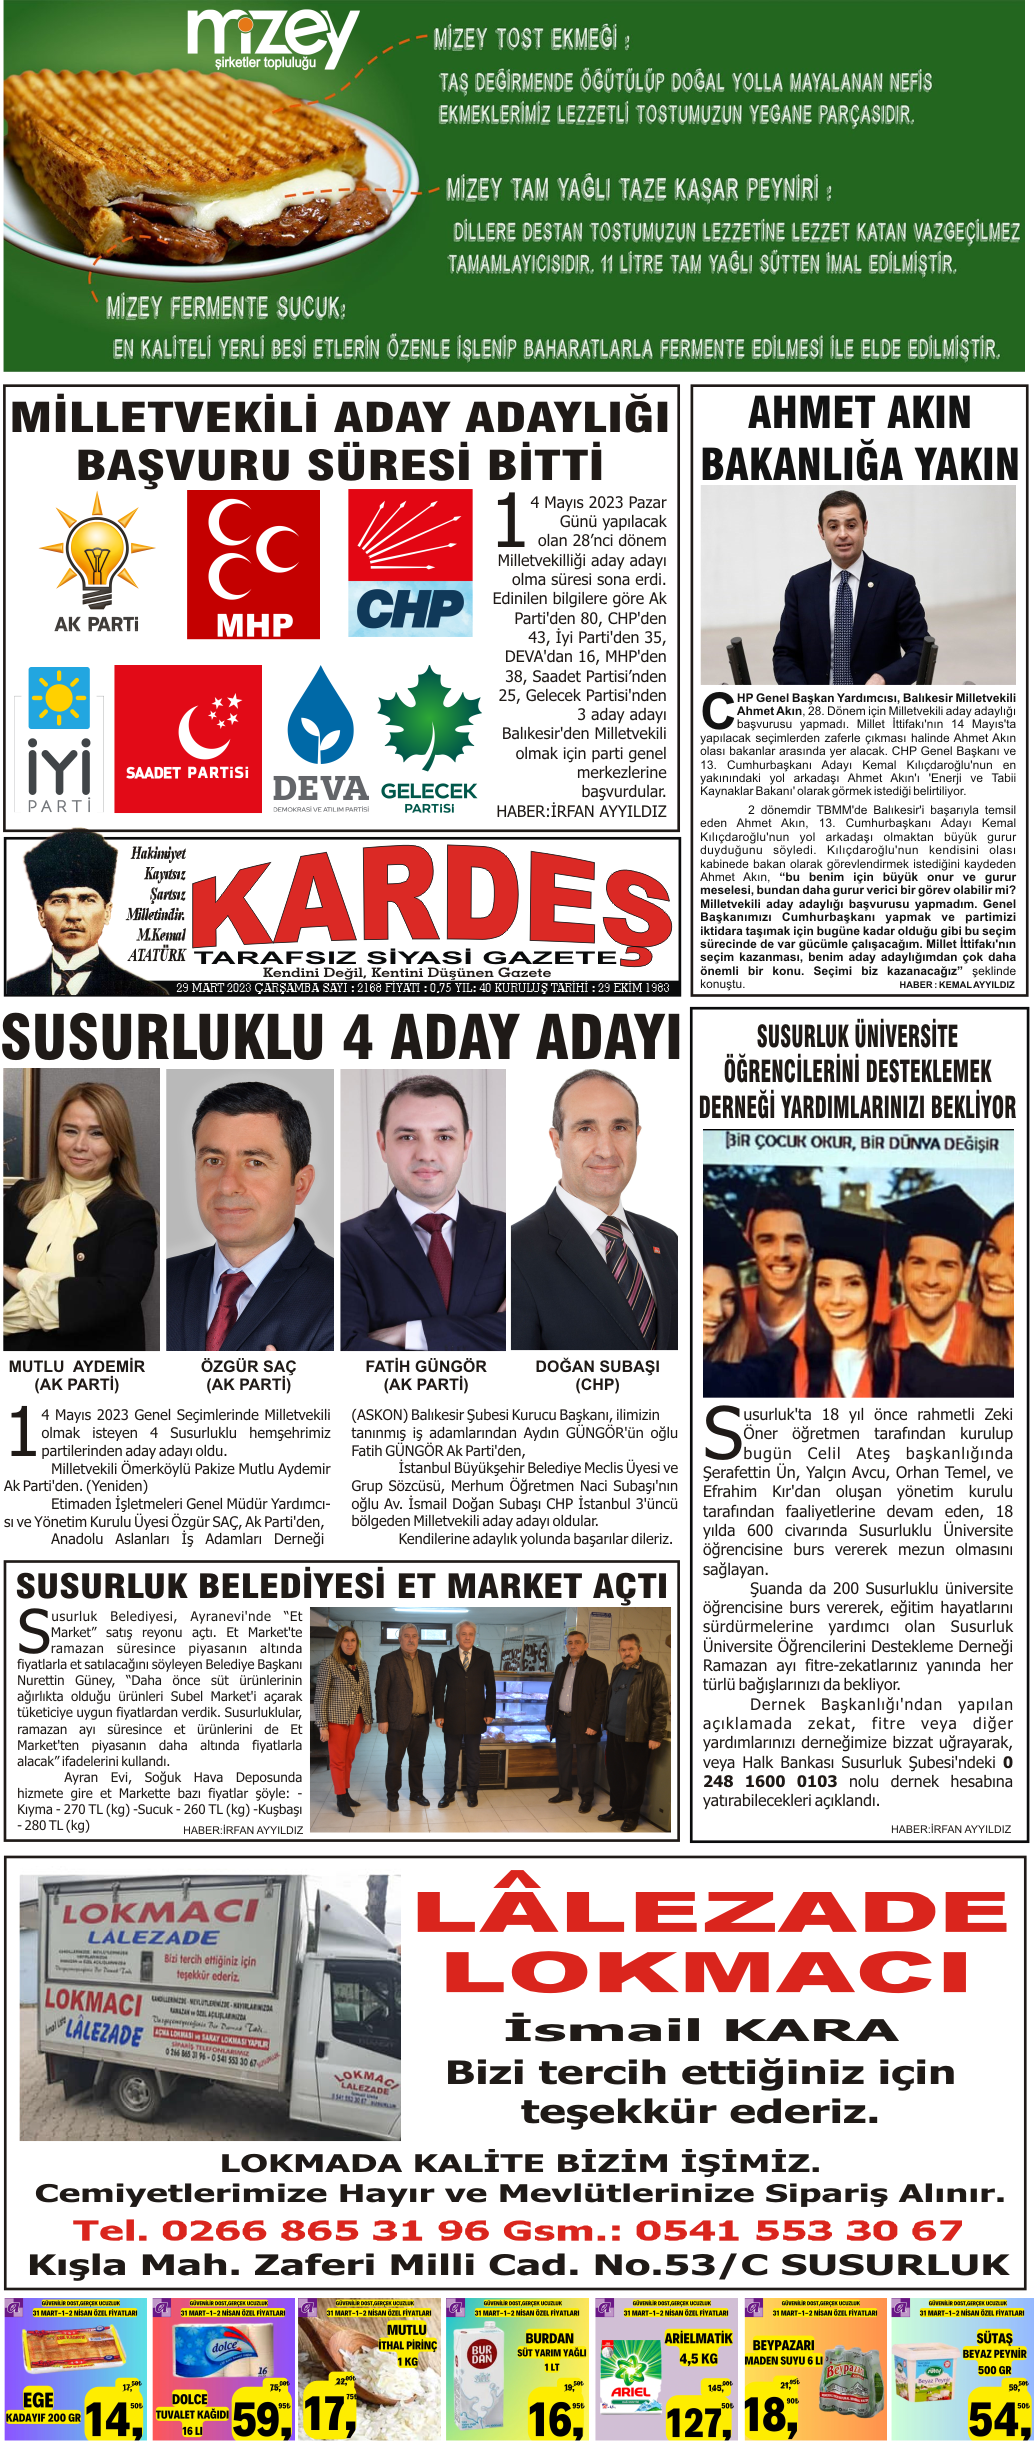 29.03.2023 Tarihli Kardeş Gazetesi